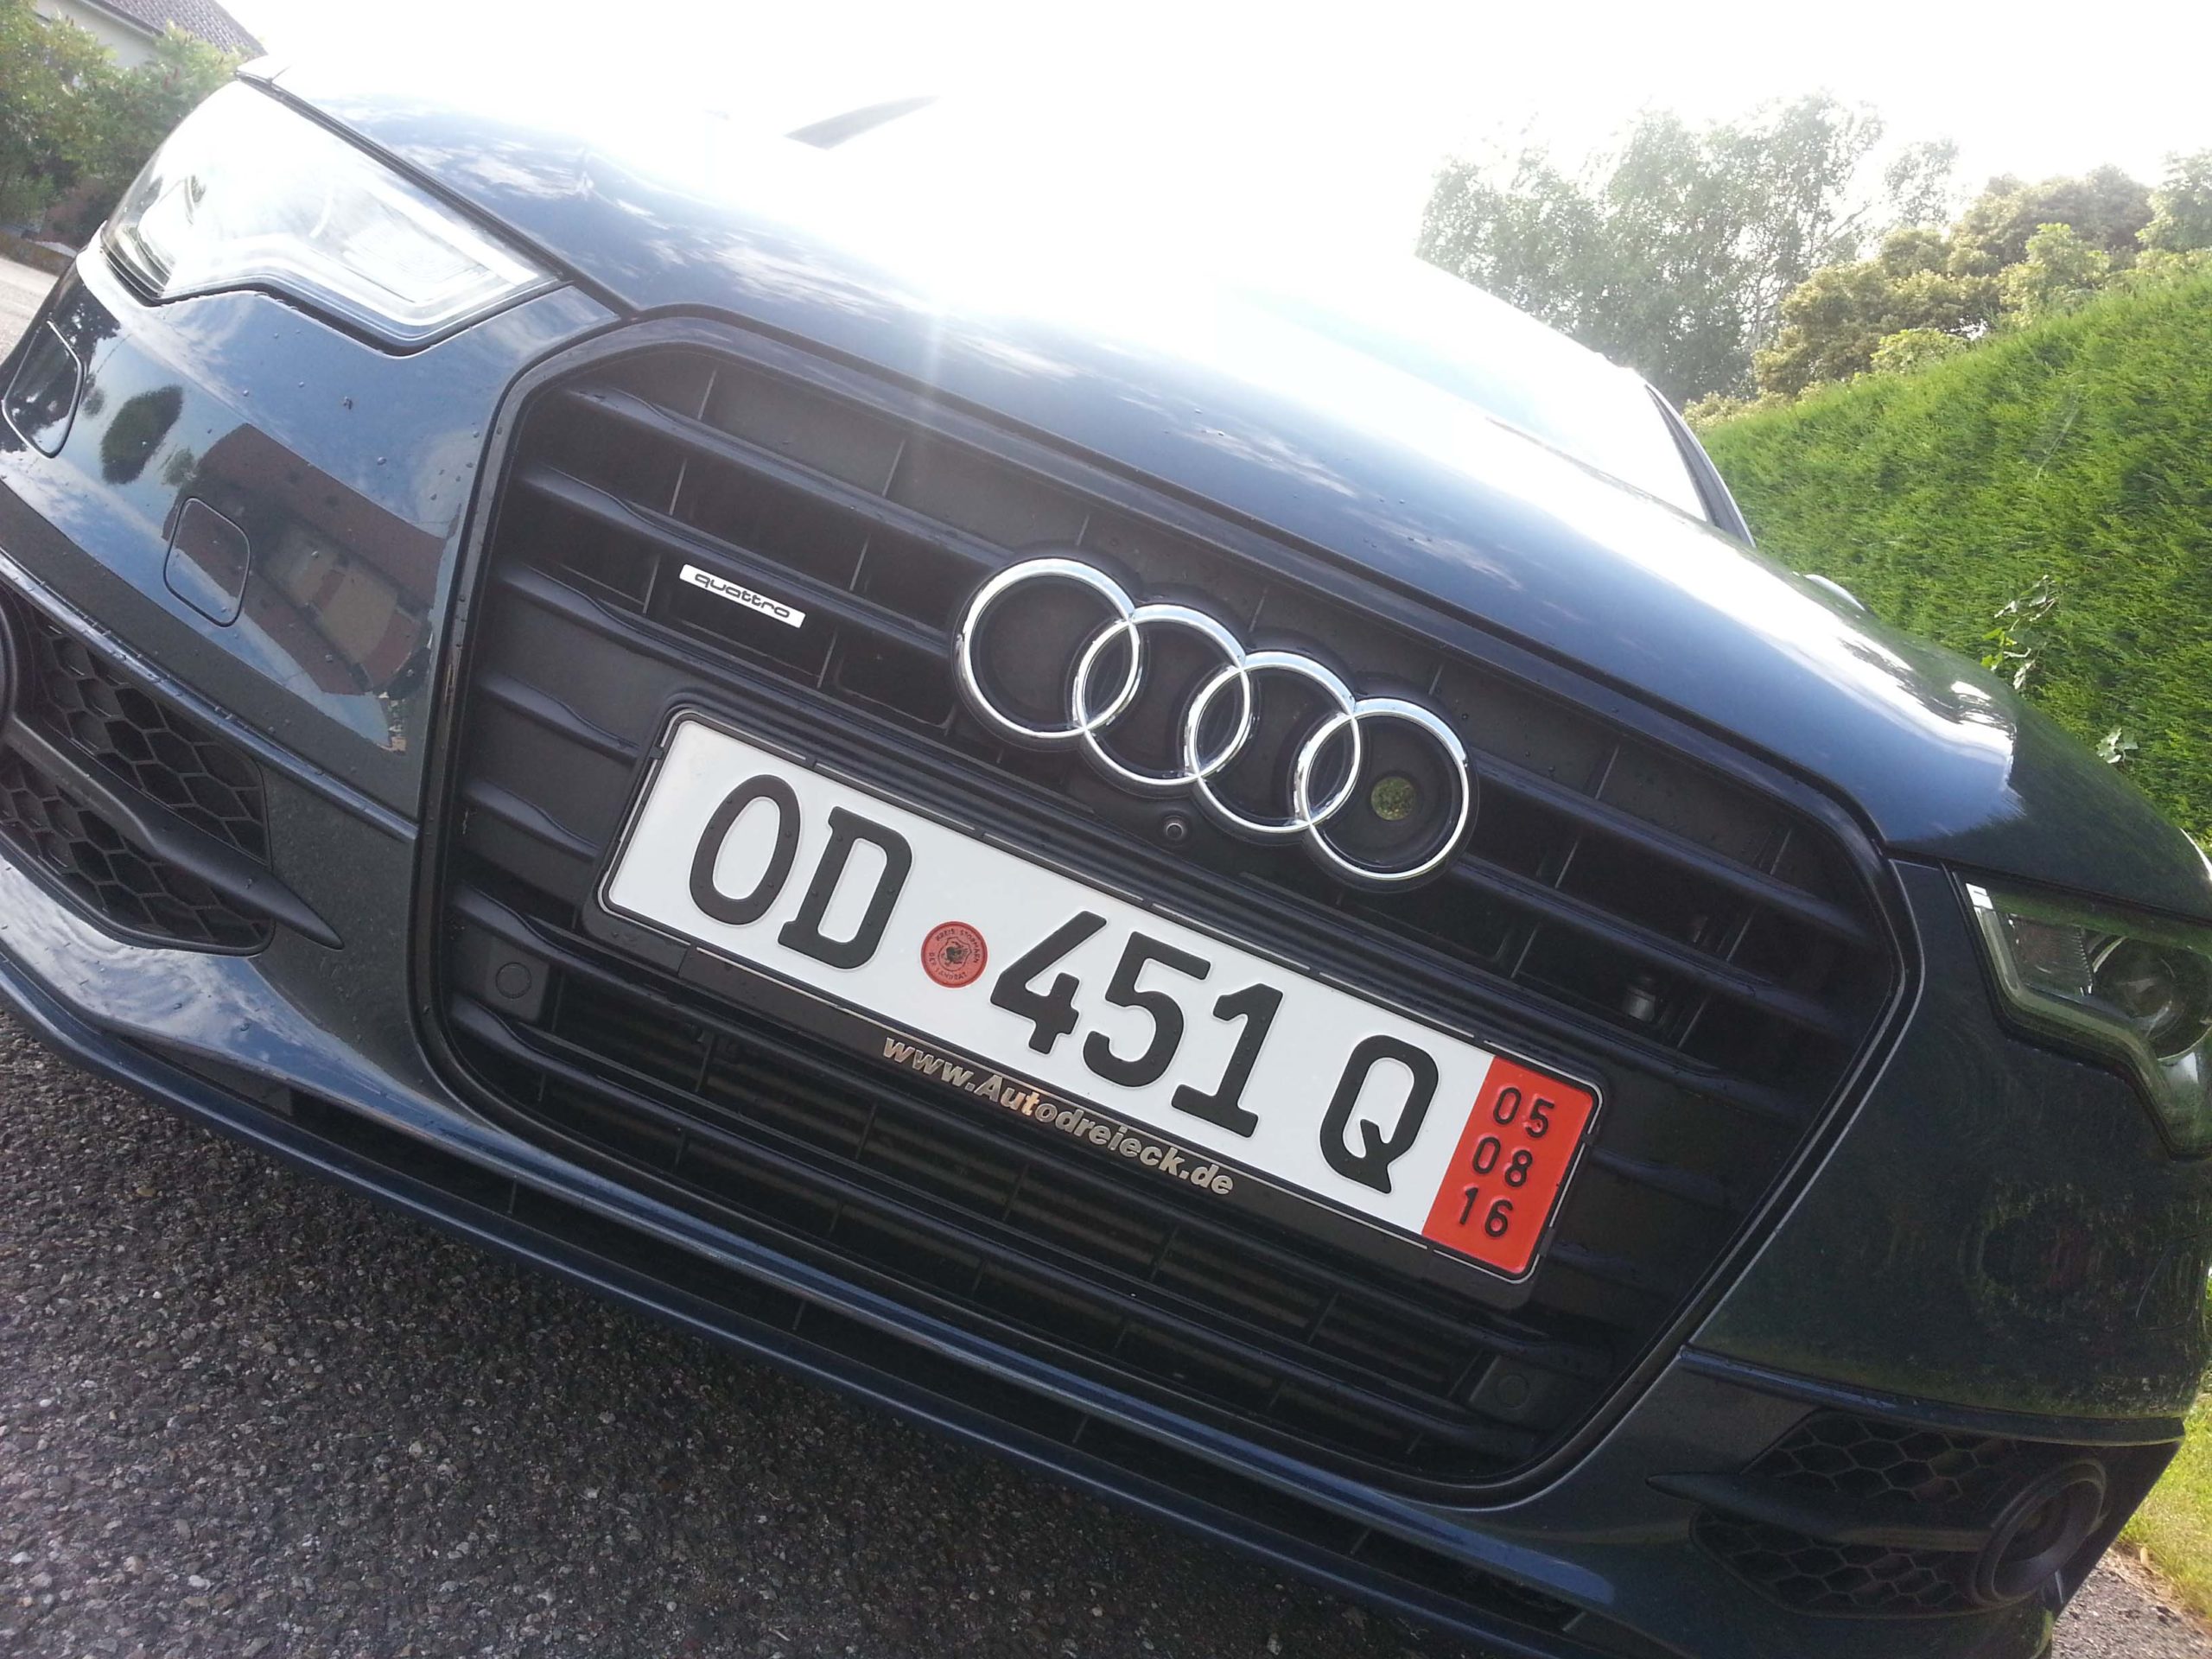 Lire la suite à propos de l’article Audi A6 Avant 3.0 TDI S-line